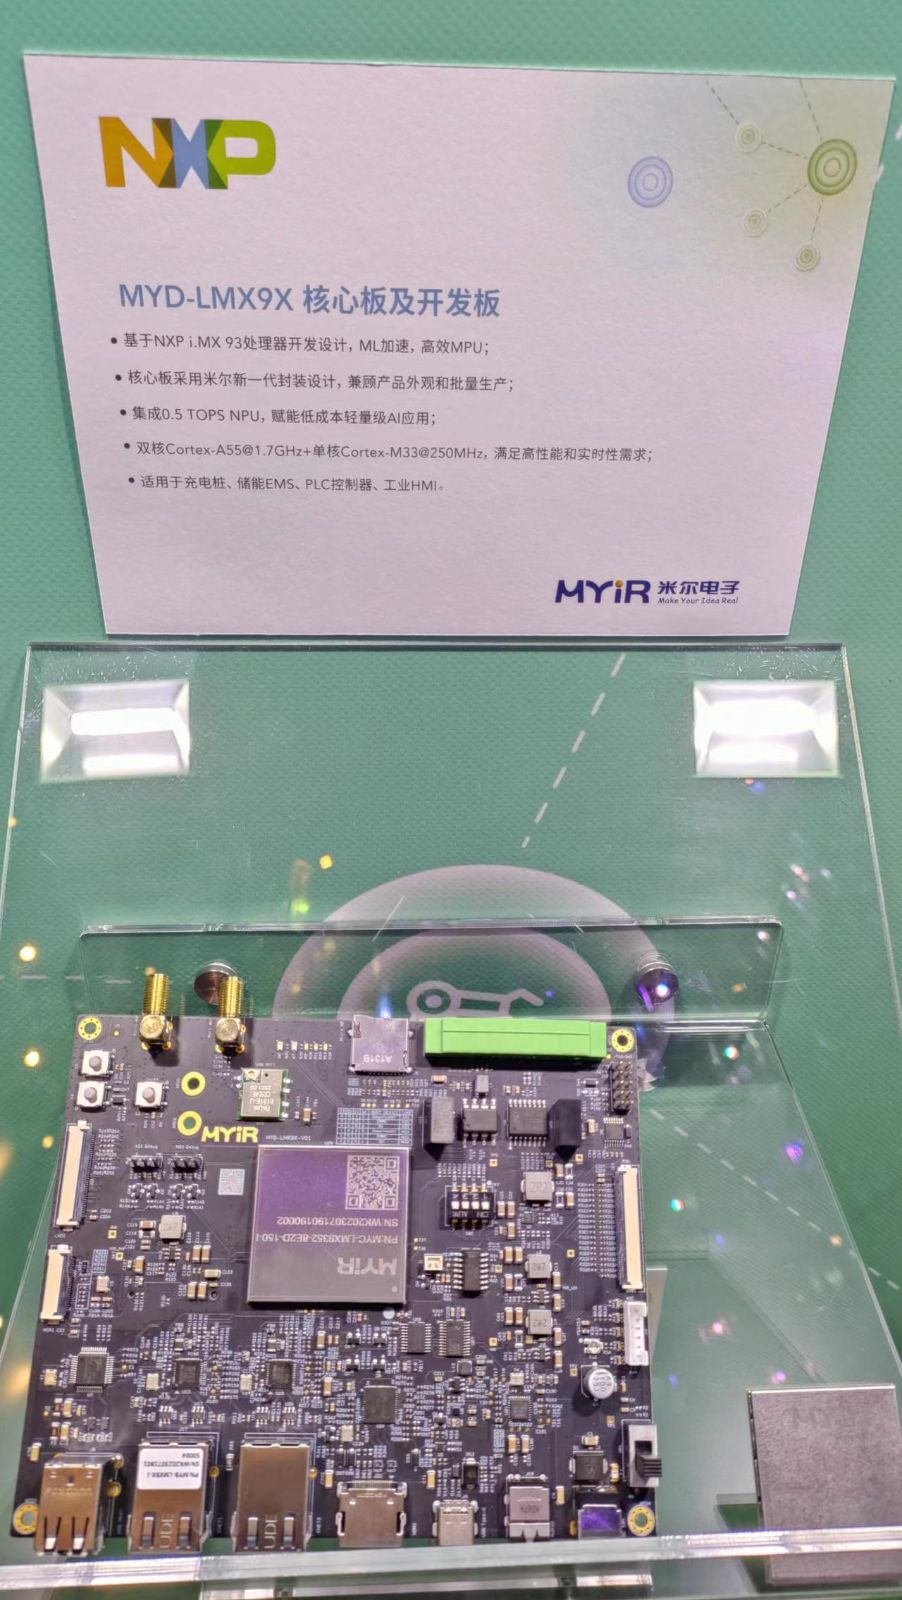 米尔基于NXP i.MX 93/i.MX 91的核心板和开发板